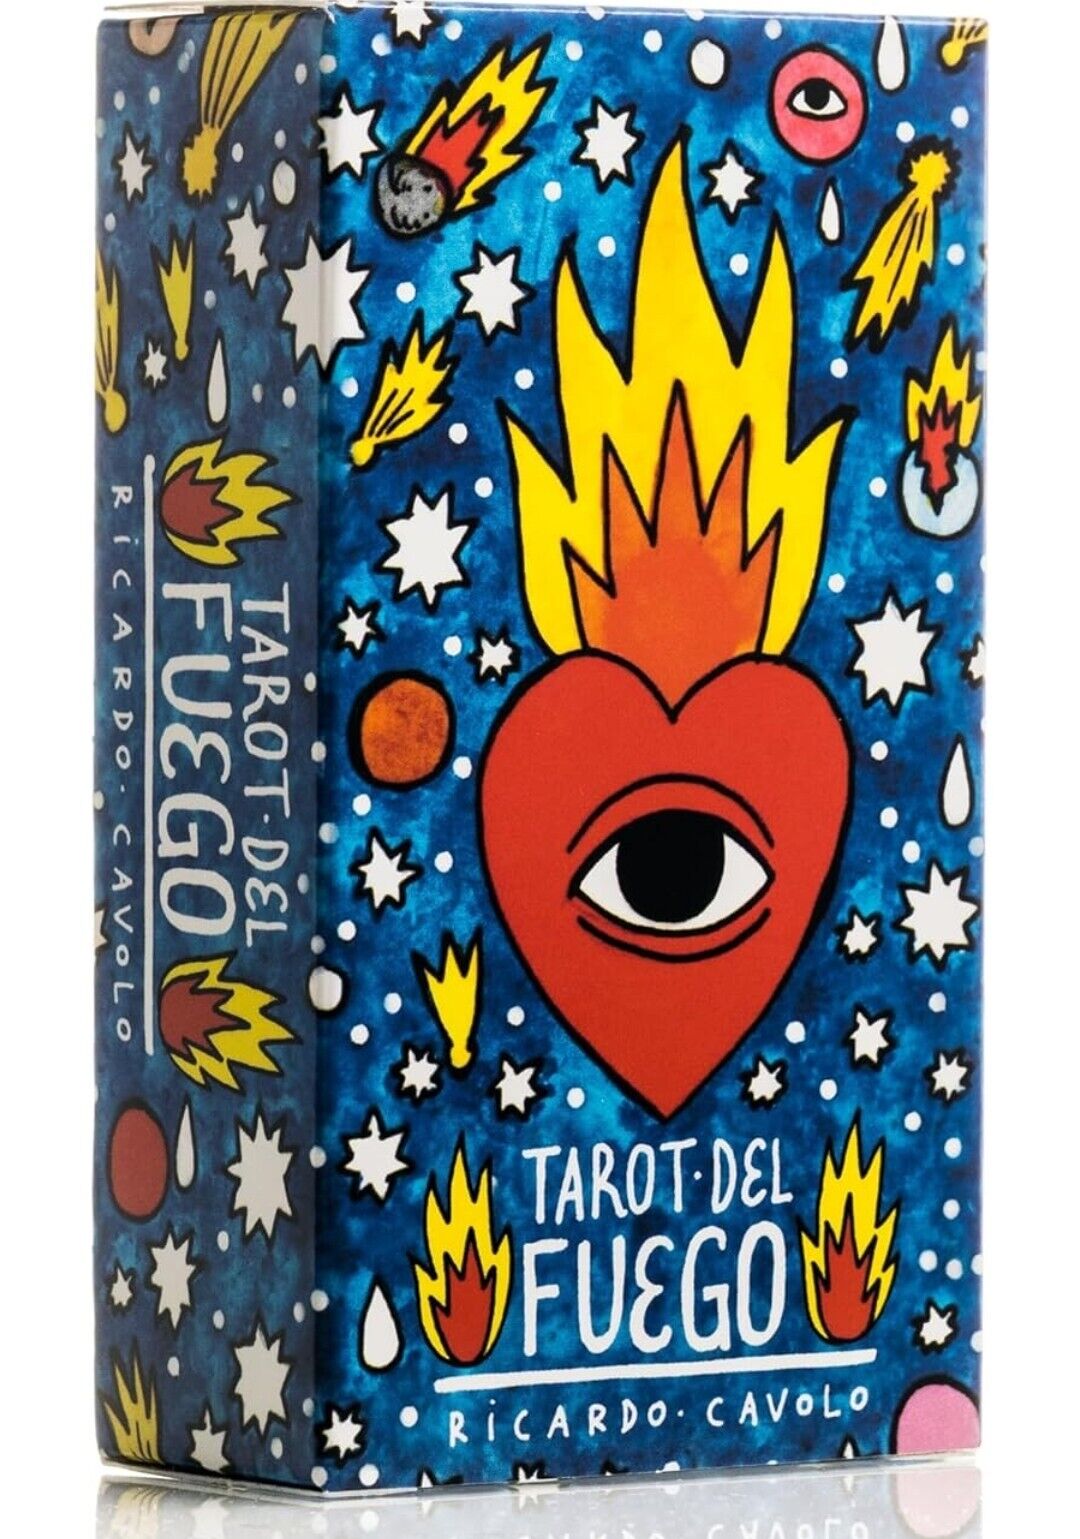 Tarot of Fire - Spanish Tarot - The Great Esoteric Tarot. 3 Tarot Decks